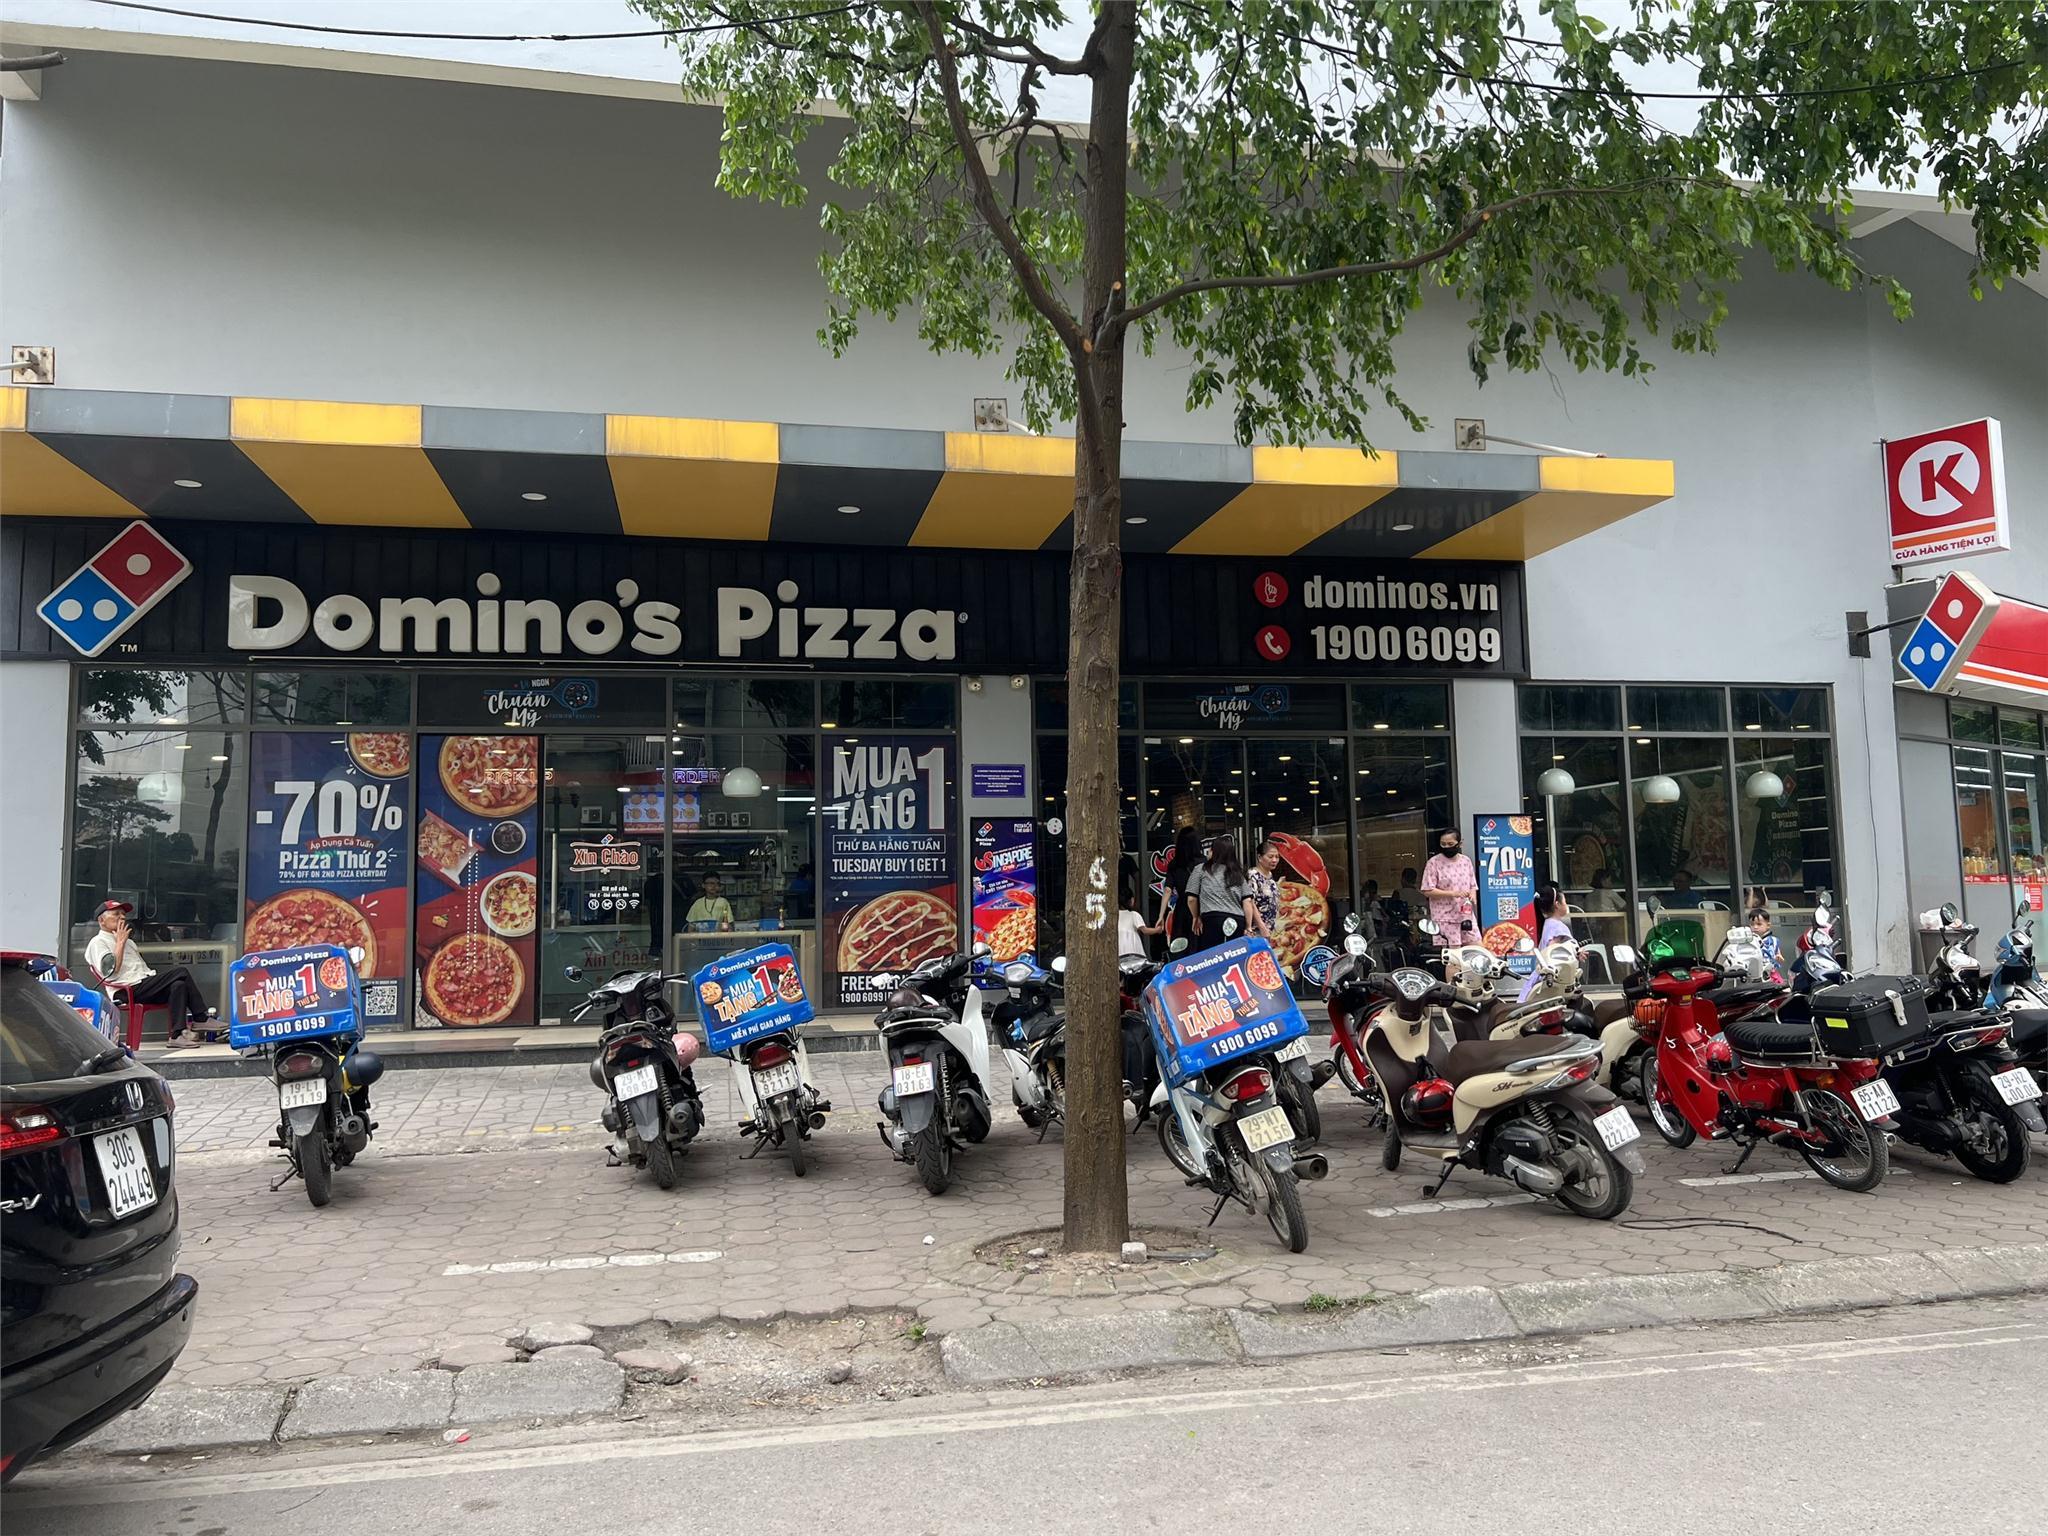 Bán Shophouse Chân Khối Đế Rice City Linh Đàm 270m2 Pizza Domino Đang thuê - Ảnh 1